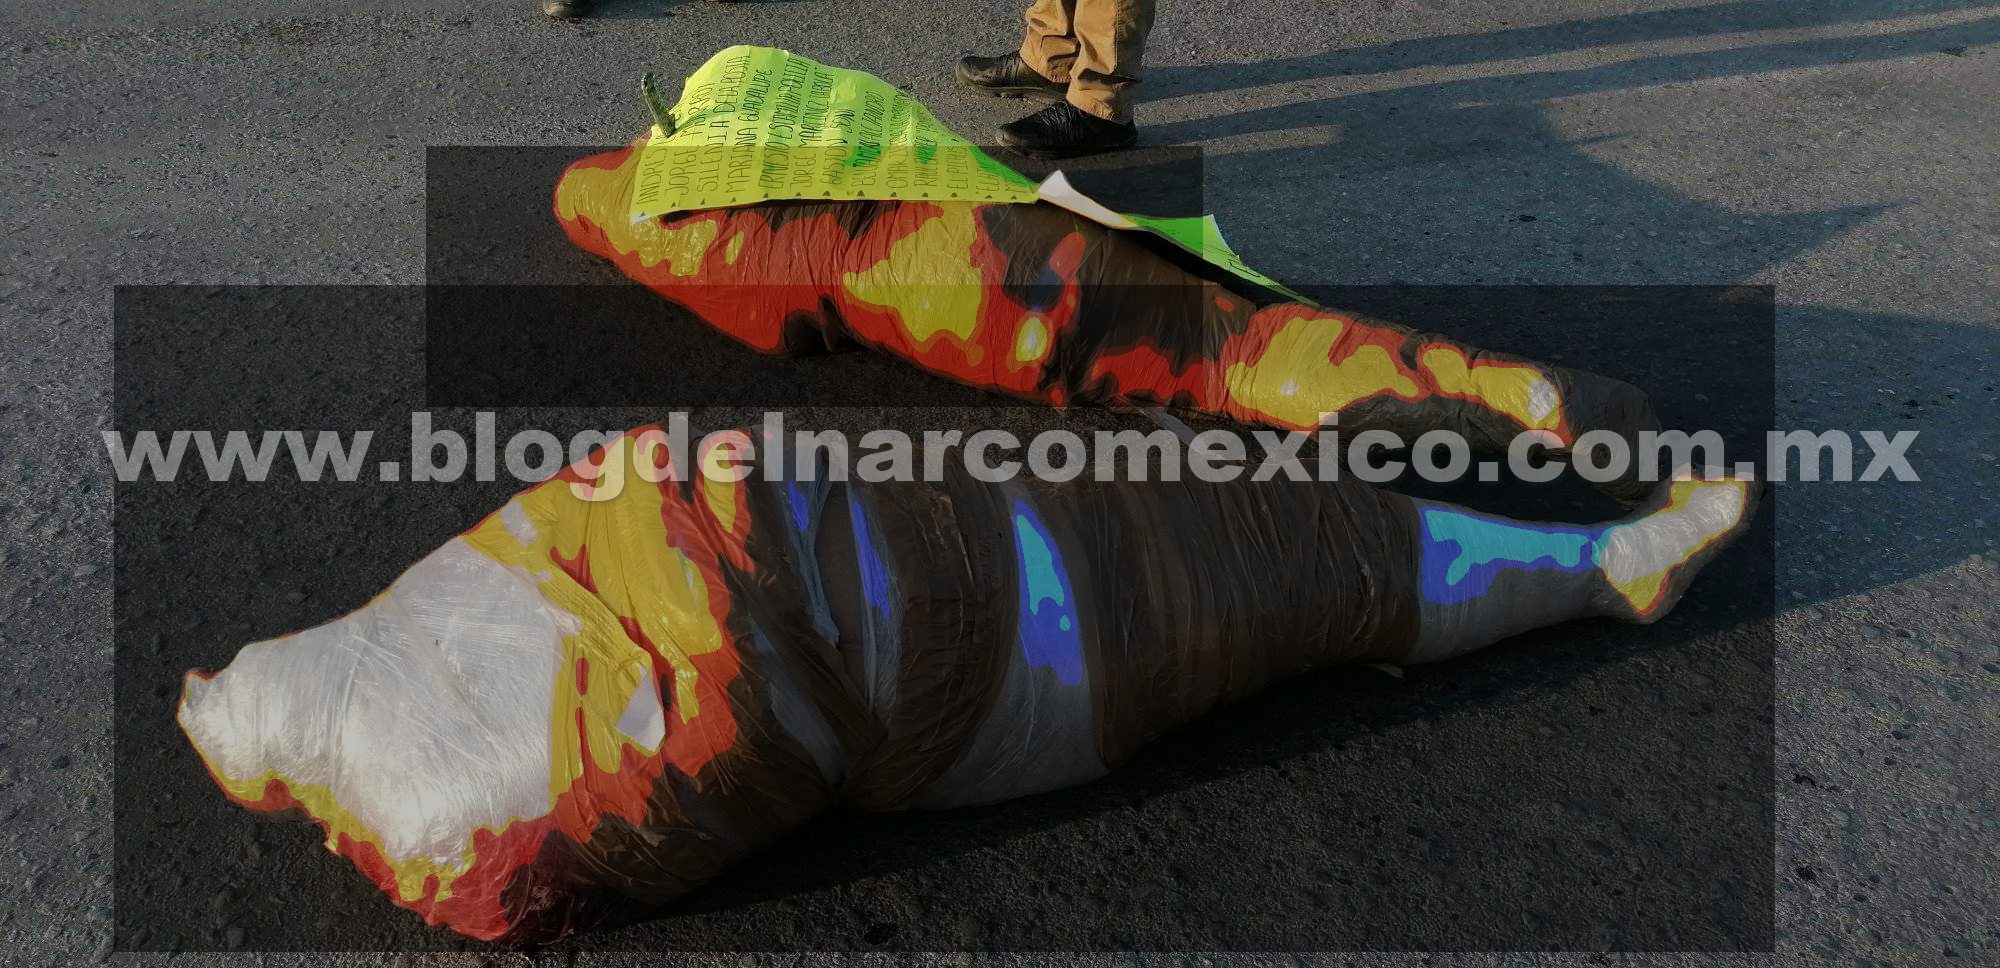 Cártel del Golfo (CDG) abandona dos cuerpos con Narcomensaje en Tamuín, San Luis Potosí